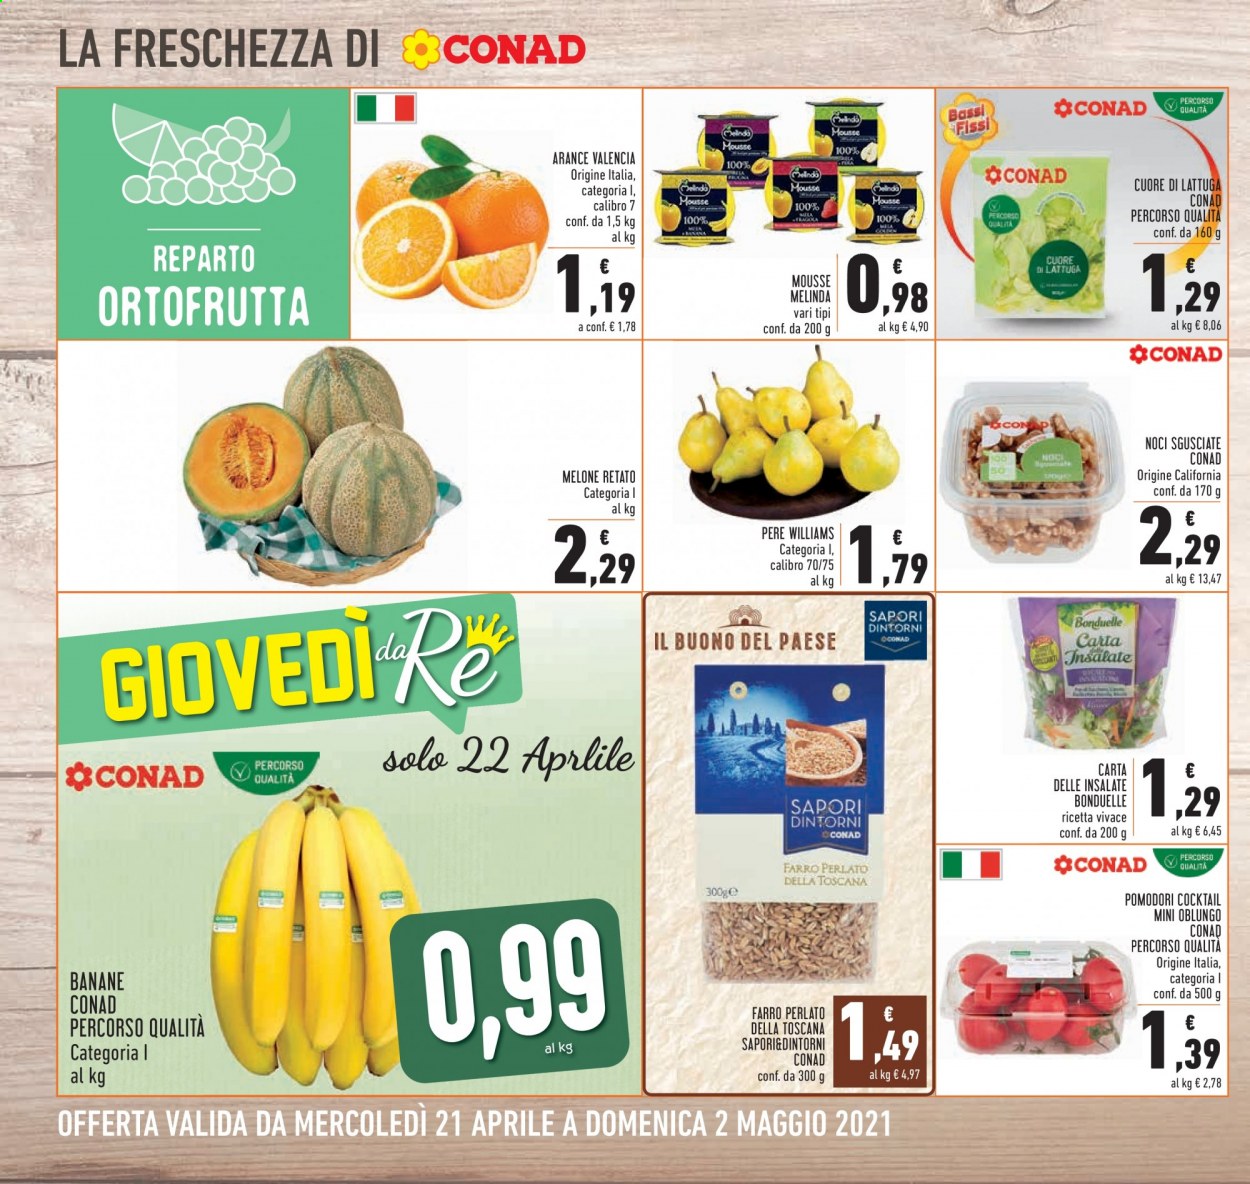 thumbnail - Volantino Conad - 21/4/2021 - 2/5/2021 - Prodotti in offerta - Bonduelle, pomodori, banane, arance, pere, melone, melone retato, mousse, farro perlato, farro, noci. Pagina 4.